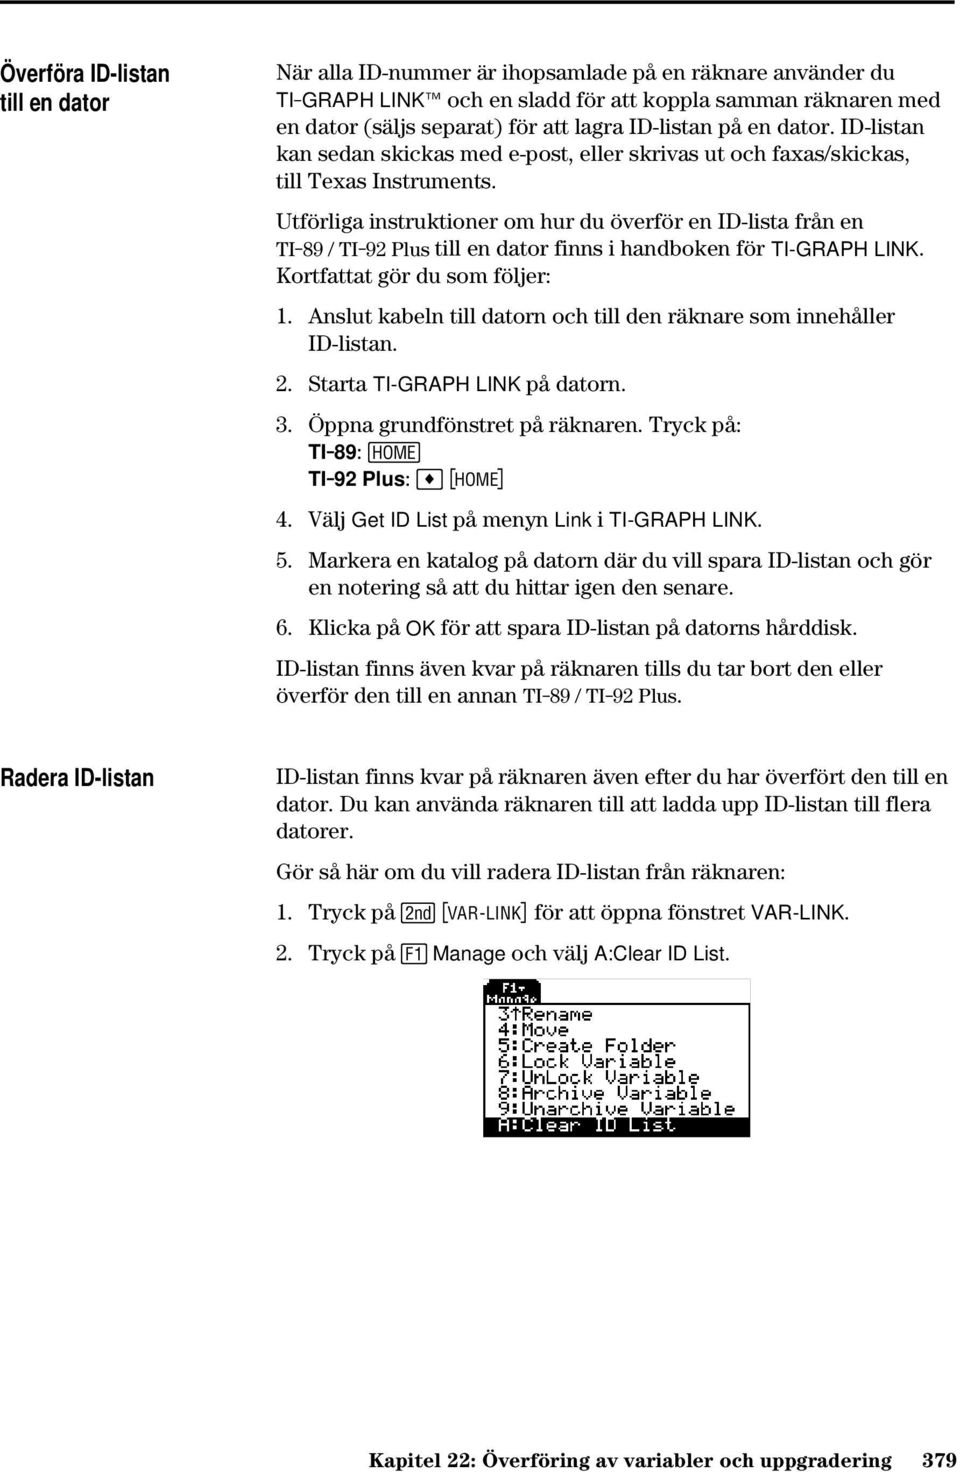 Utförliga instruktioner om hur du överför en ID-lista från en TI-89 / TI-92 Plus till en dator finns i handboken för TI-GRAPH LINK. Kortfattat gör du som följer: 1.